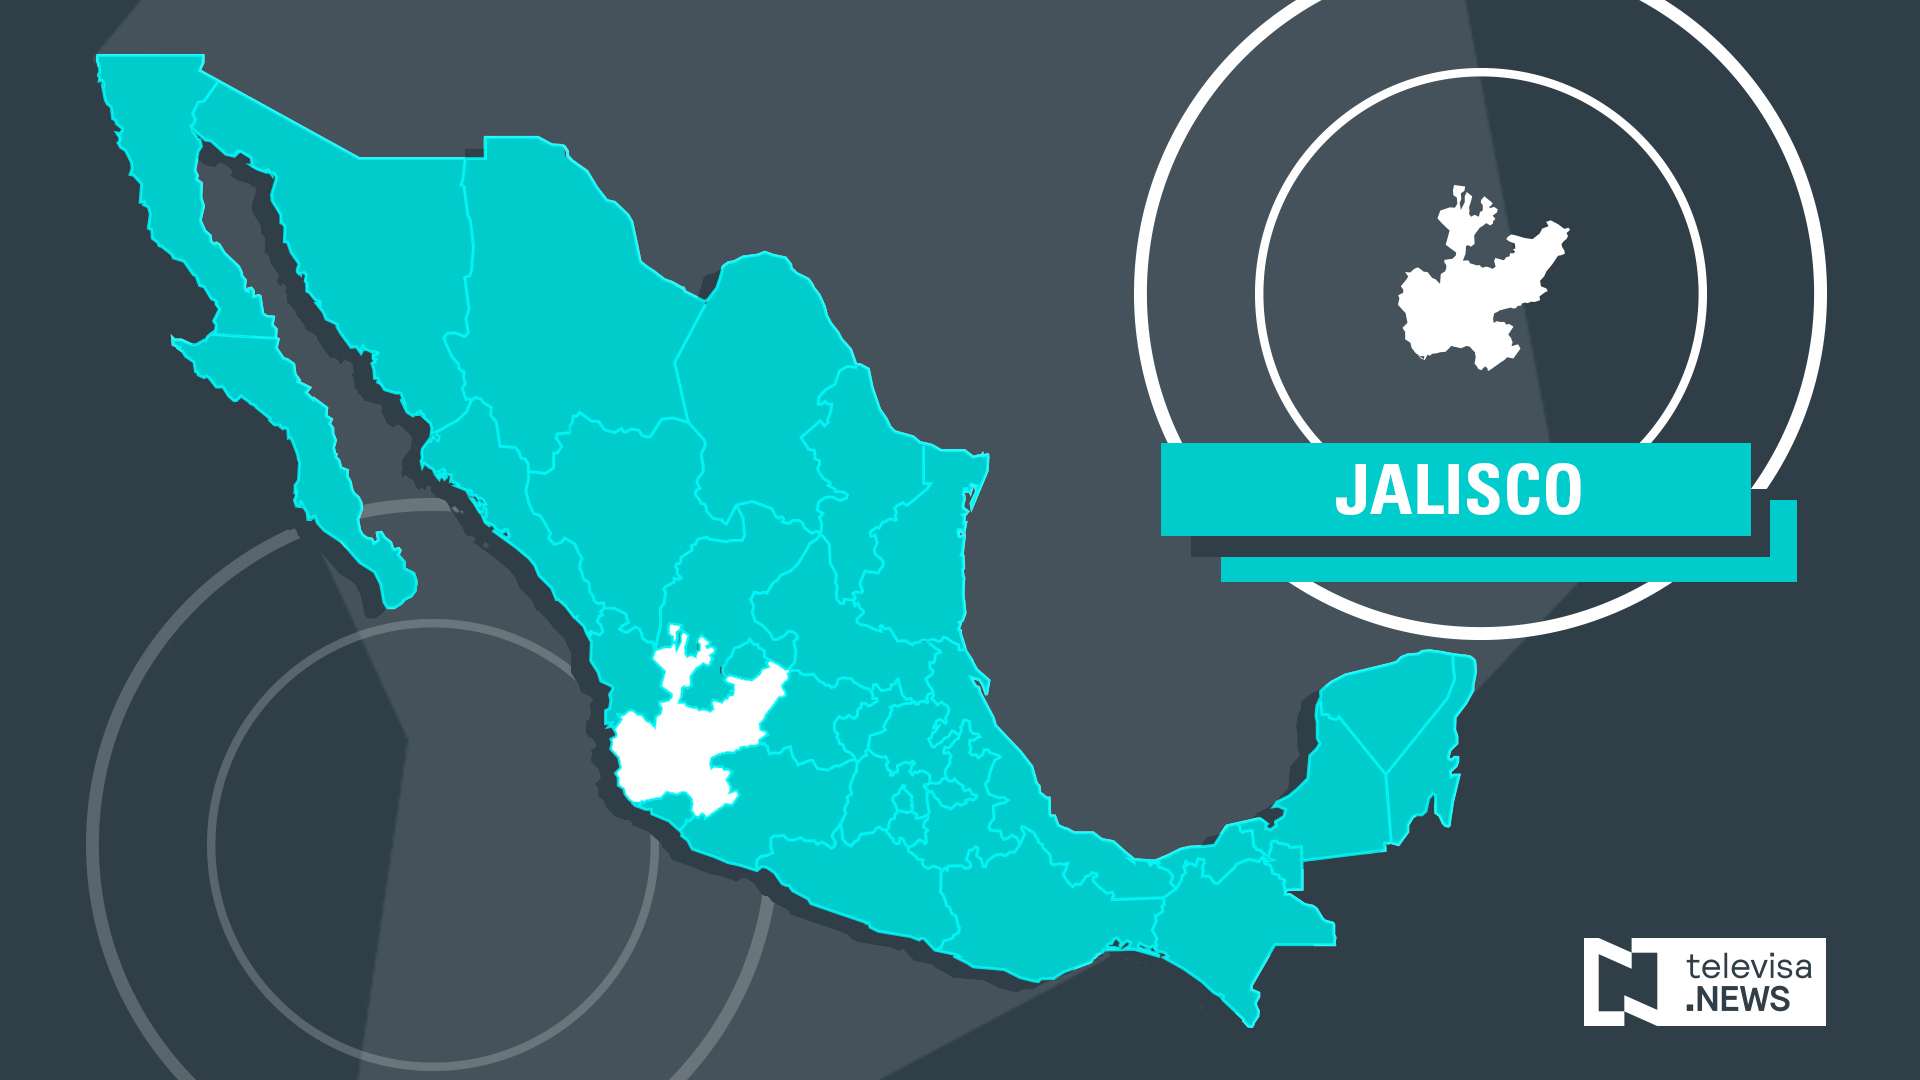 Bomberos rescatan a hombre intentaba suicidarse en Jalisco